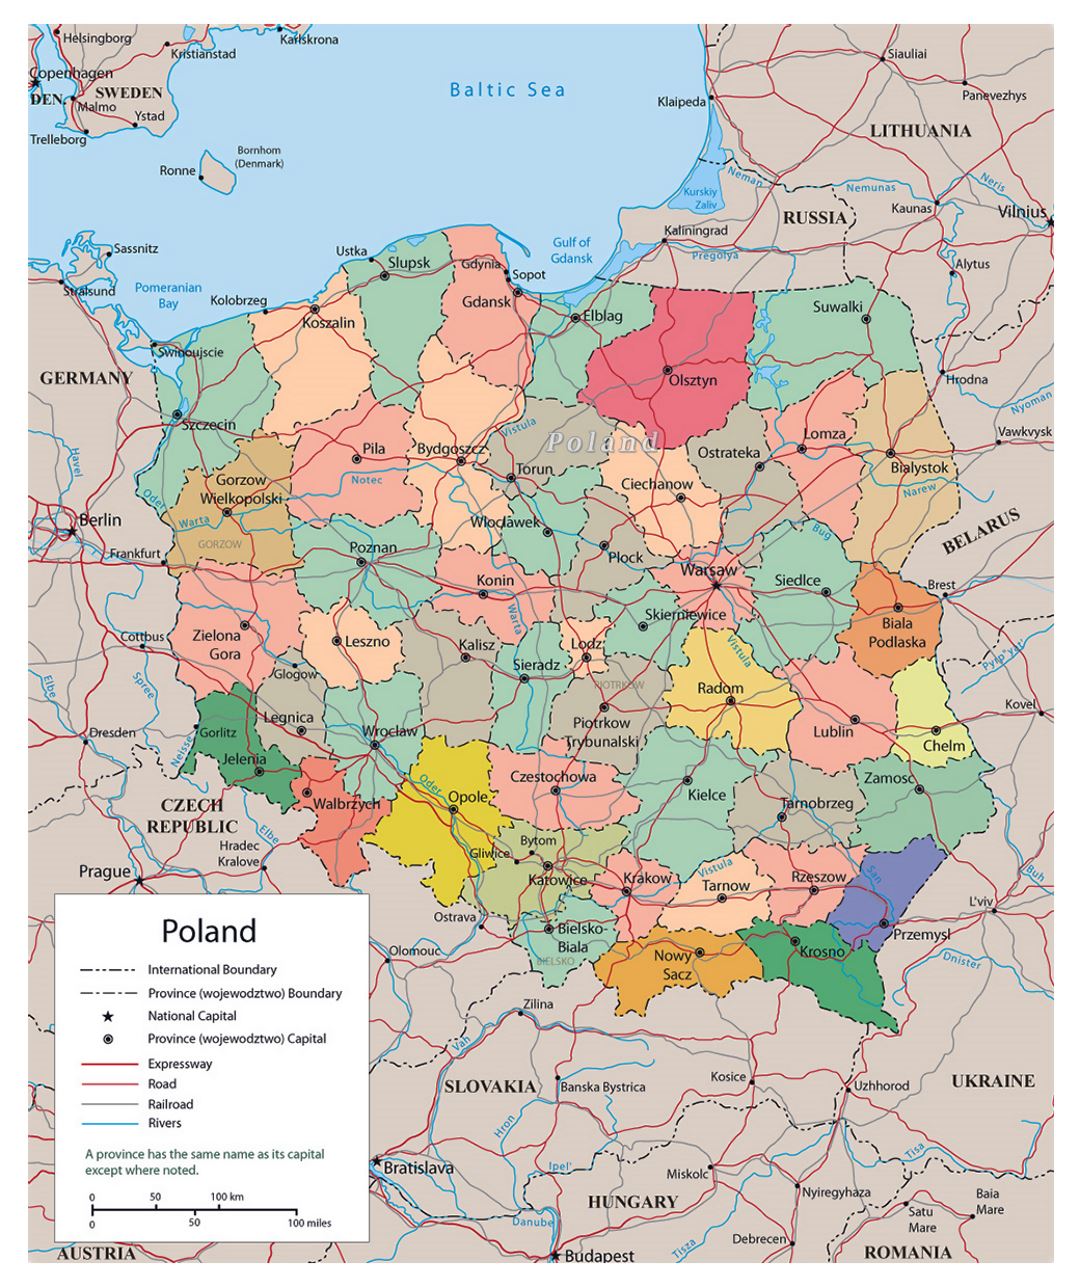 Mapa político y administrativo de Polonia con carreteras, ferrocarriles y grandes ciudades